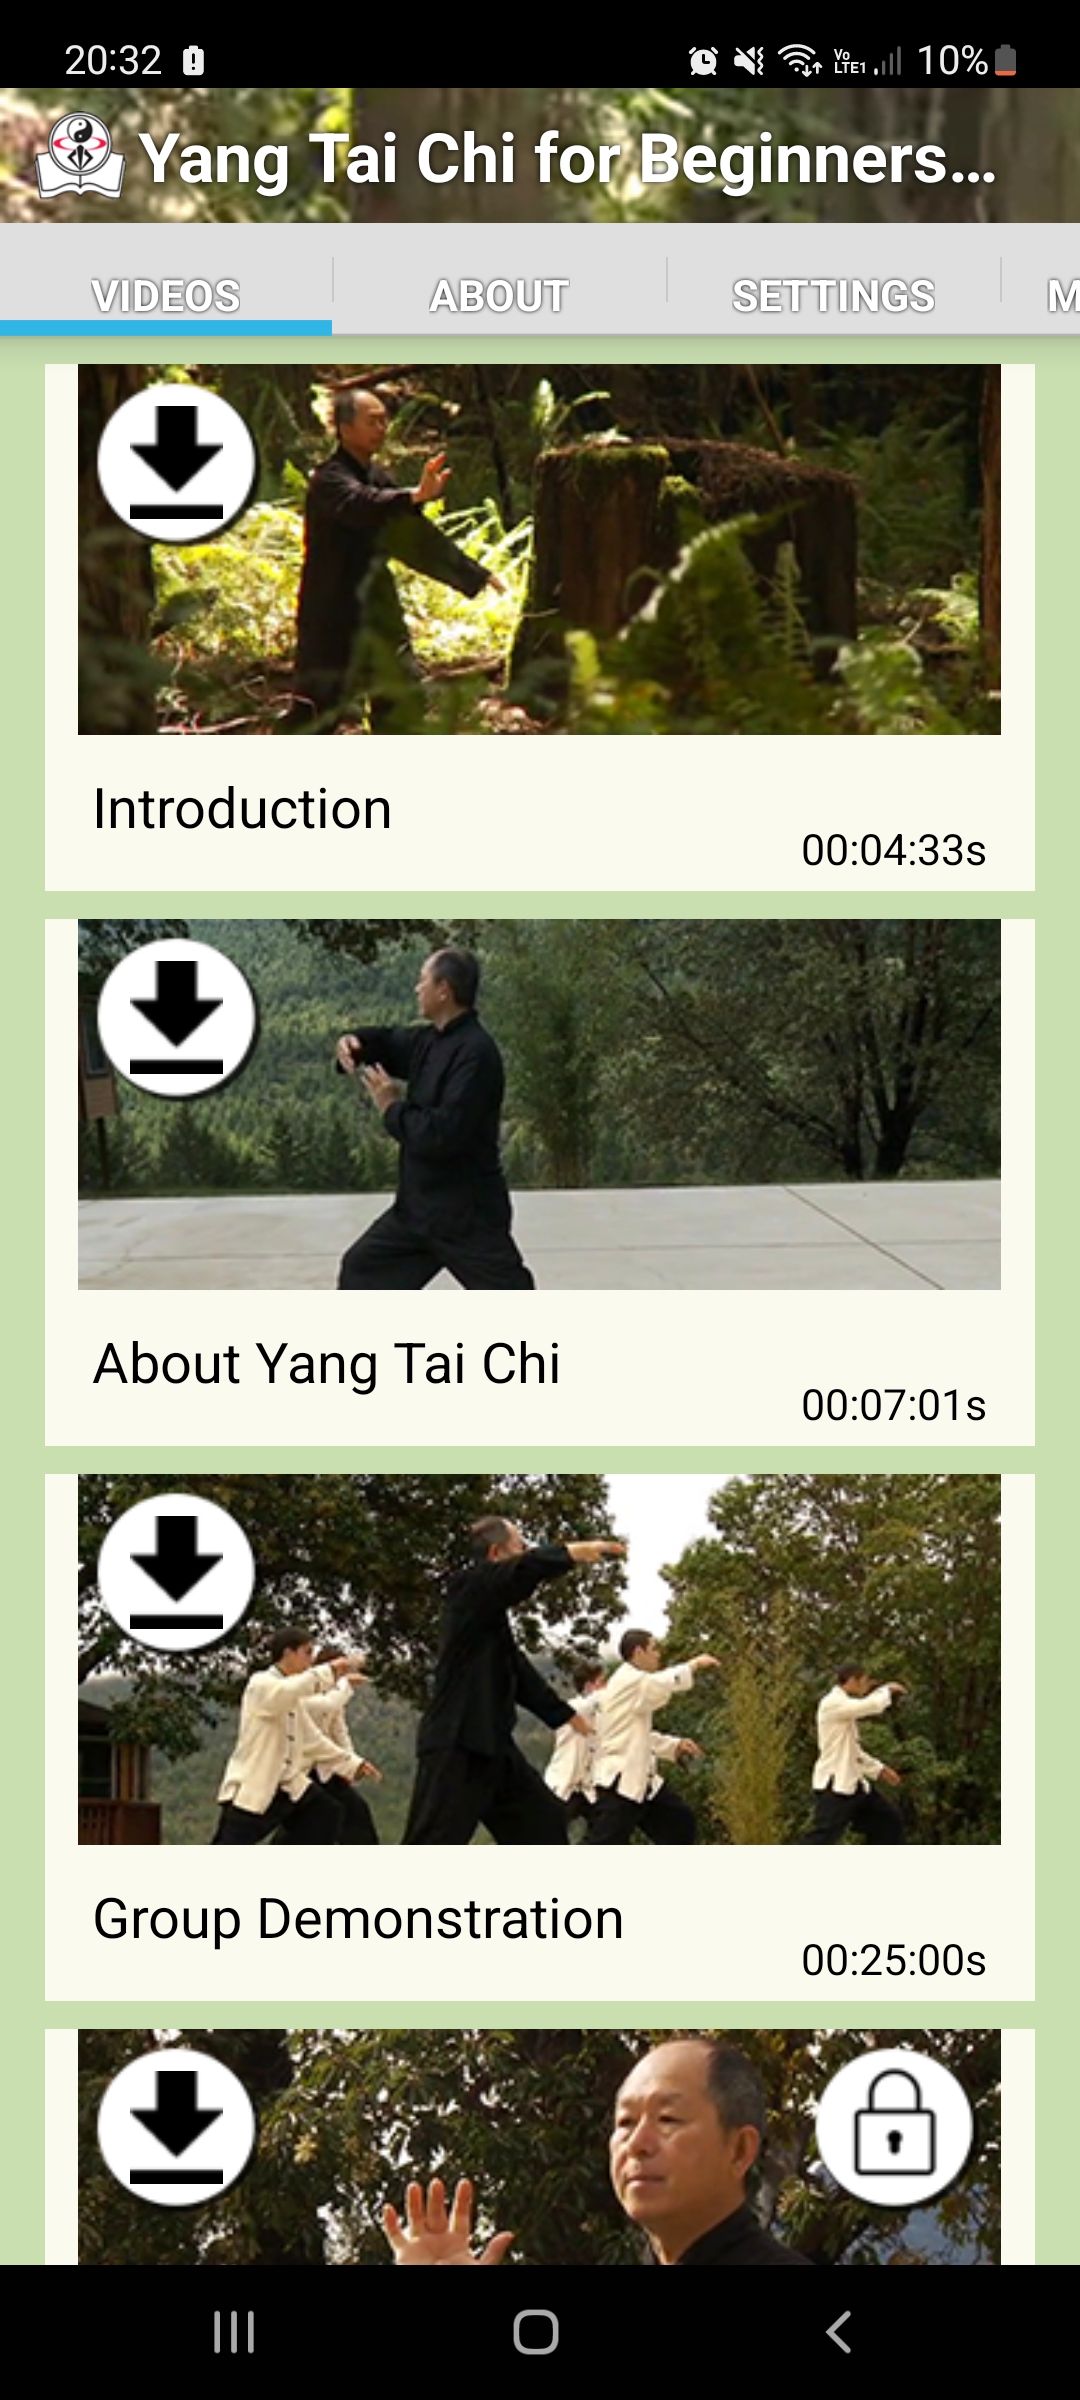 Yang Tai Chi for Beginners Part 1 mobile app